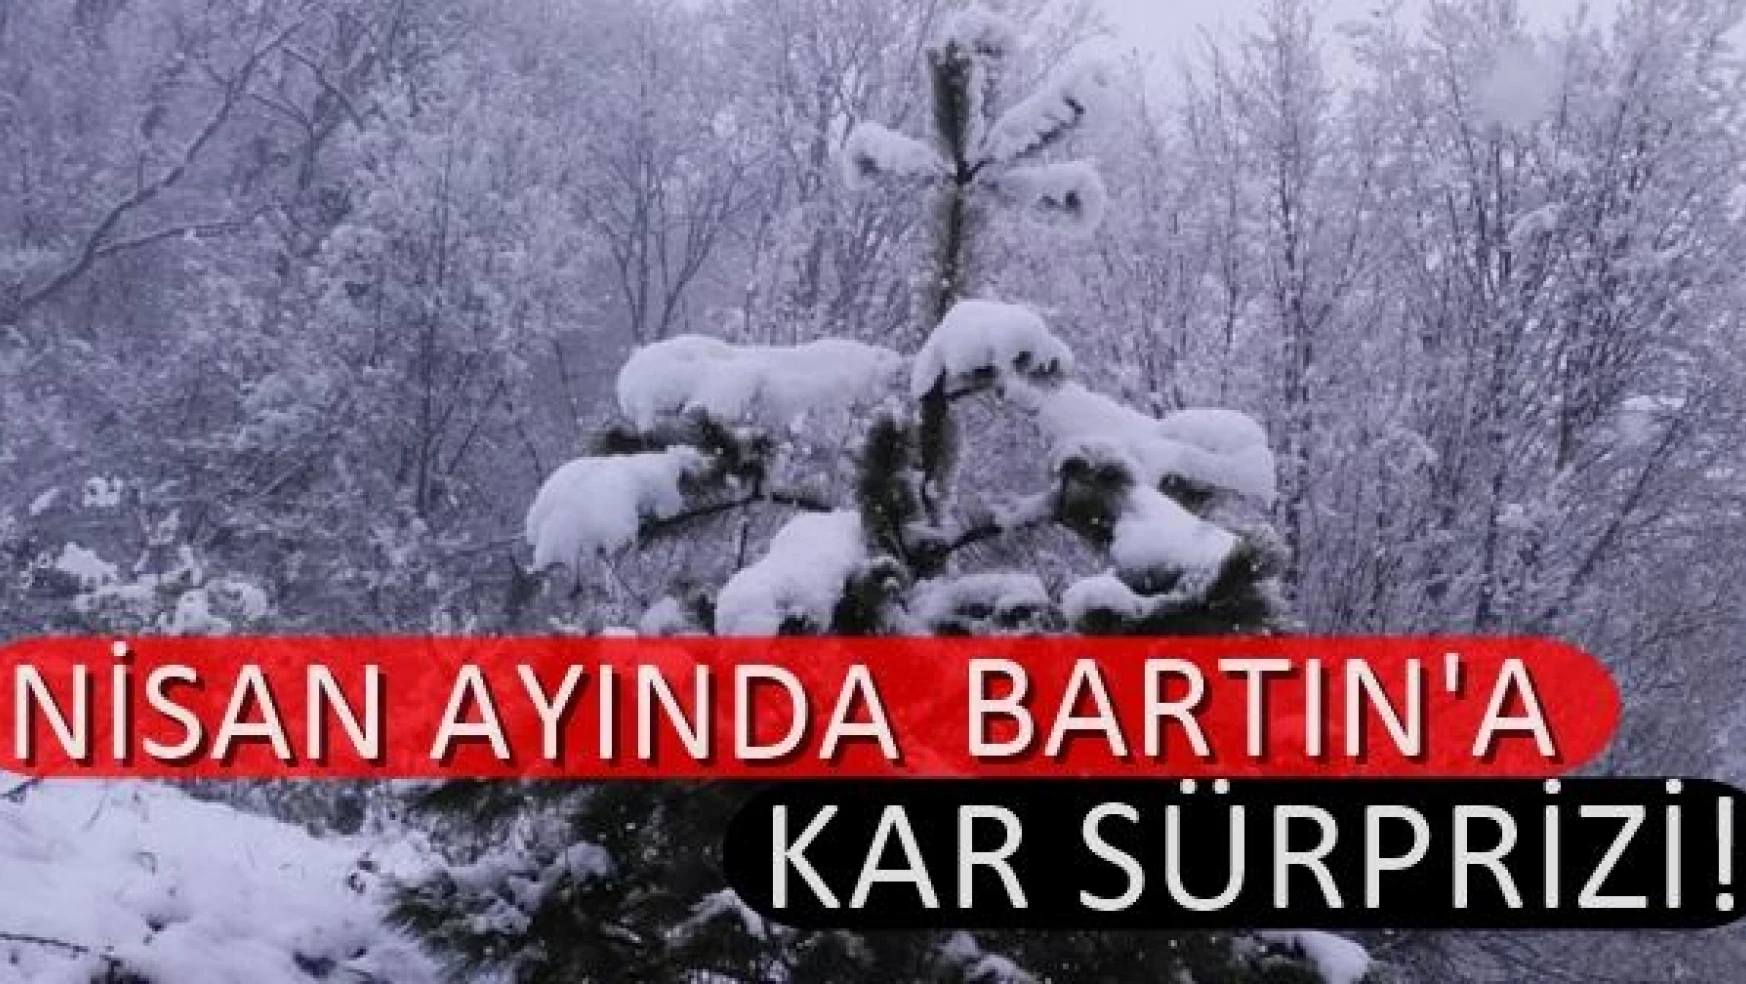 Nisan ayında Bartın'a Kar Sürprizi!